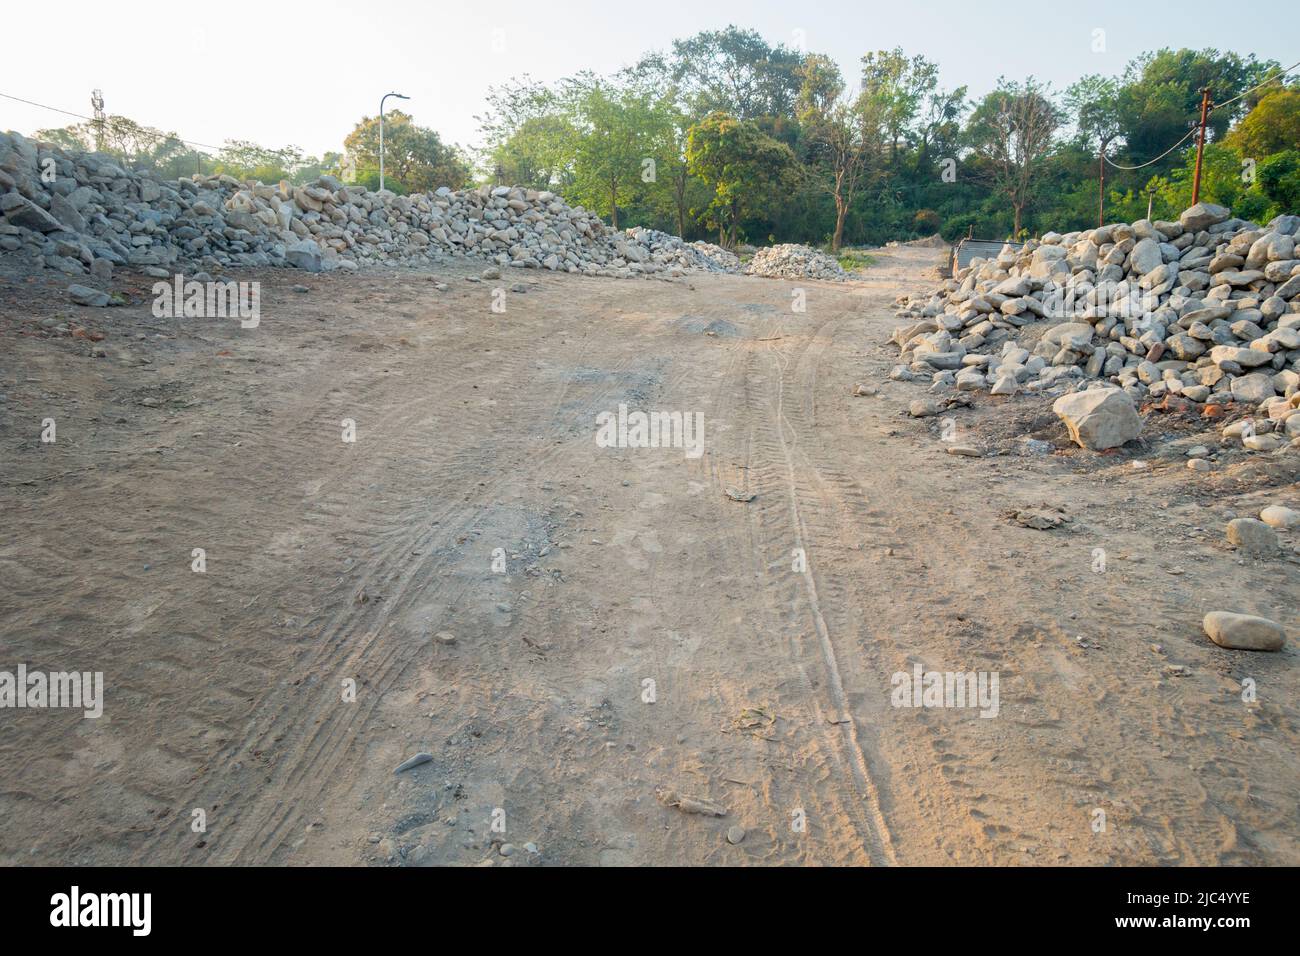 Déforestation et excavation de sol pour construire une route au milieu d'une forêt. Dehradun, Uttarakhand Inde Banque D'Images